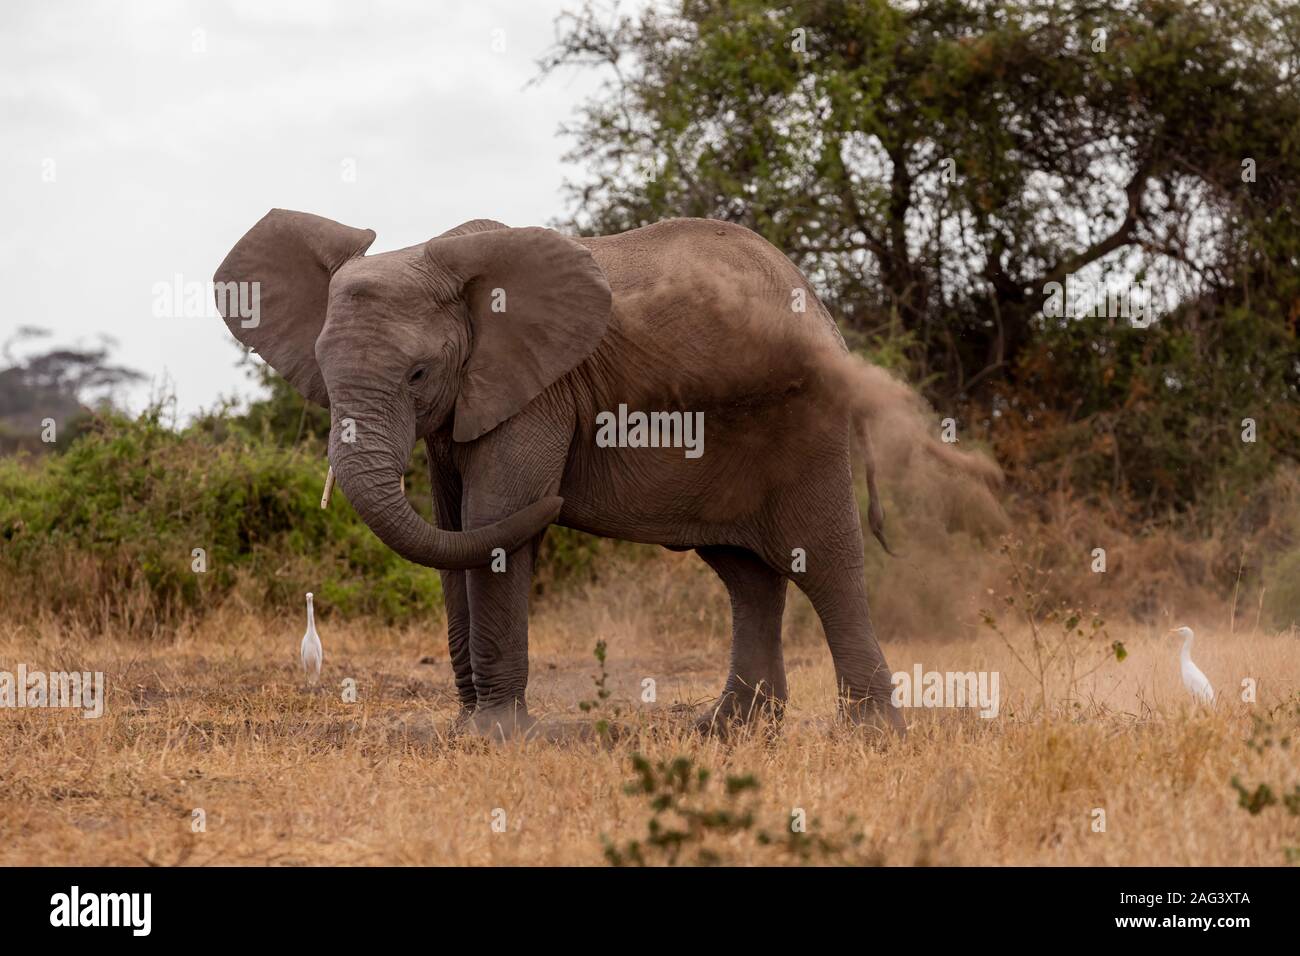 L'éléphant africain (Loxodonta africana) bénéficiant d'un bain de poussière dans le Parc national Amboseli, Kenya Banque D'Images